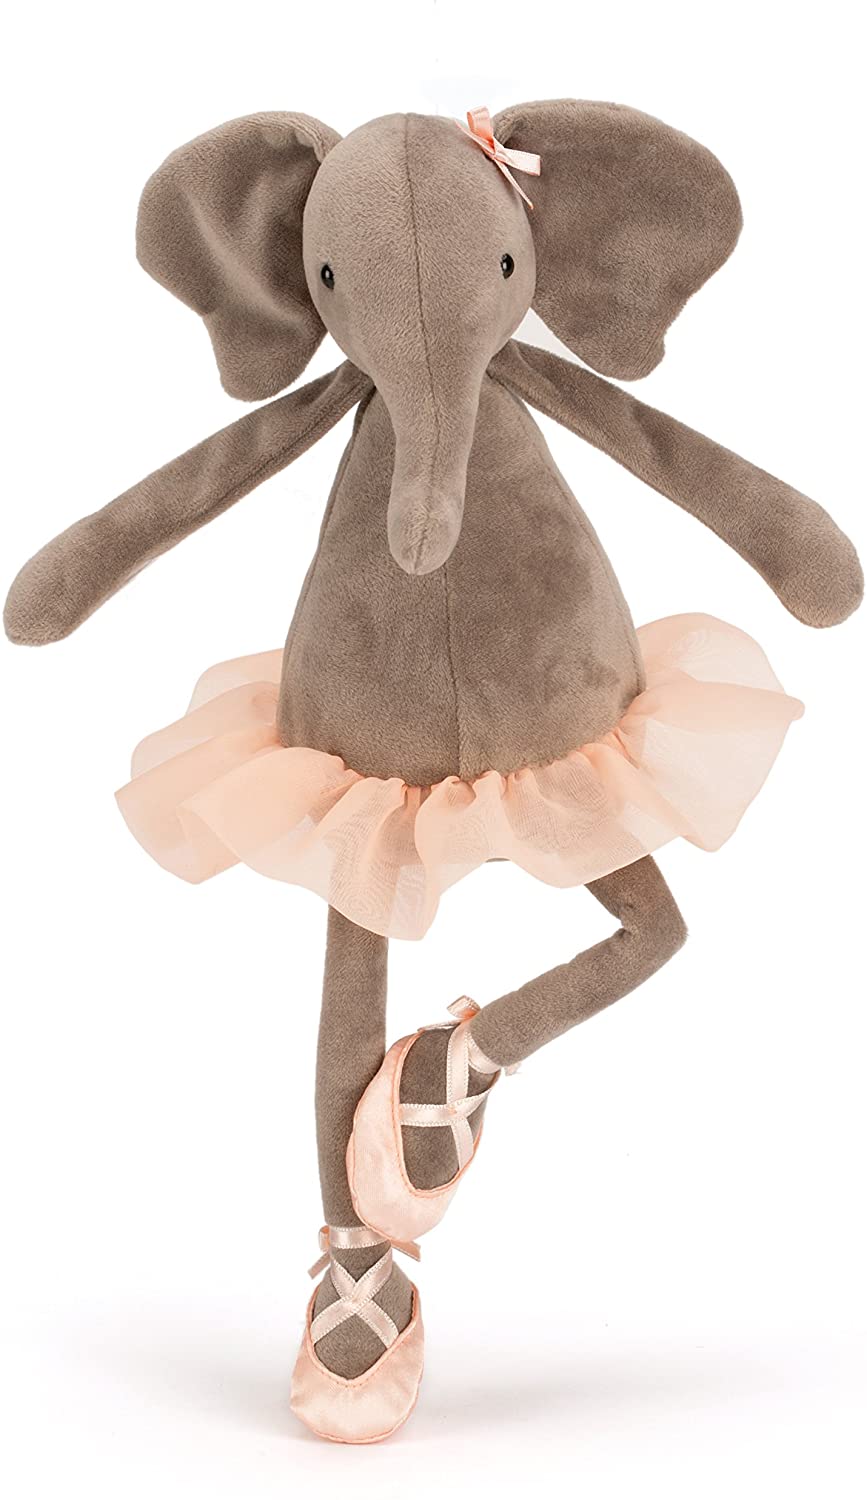 Elly Elephant Ballerina -Stuffed Elephant